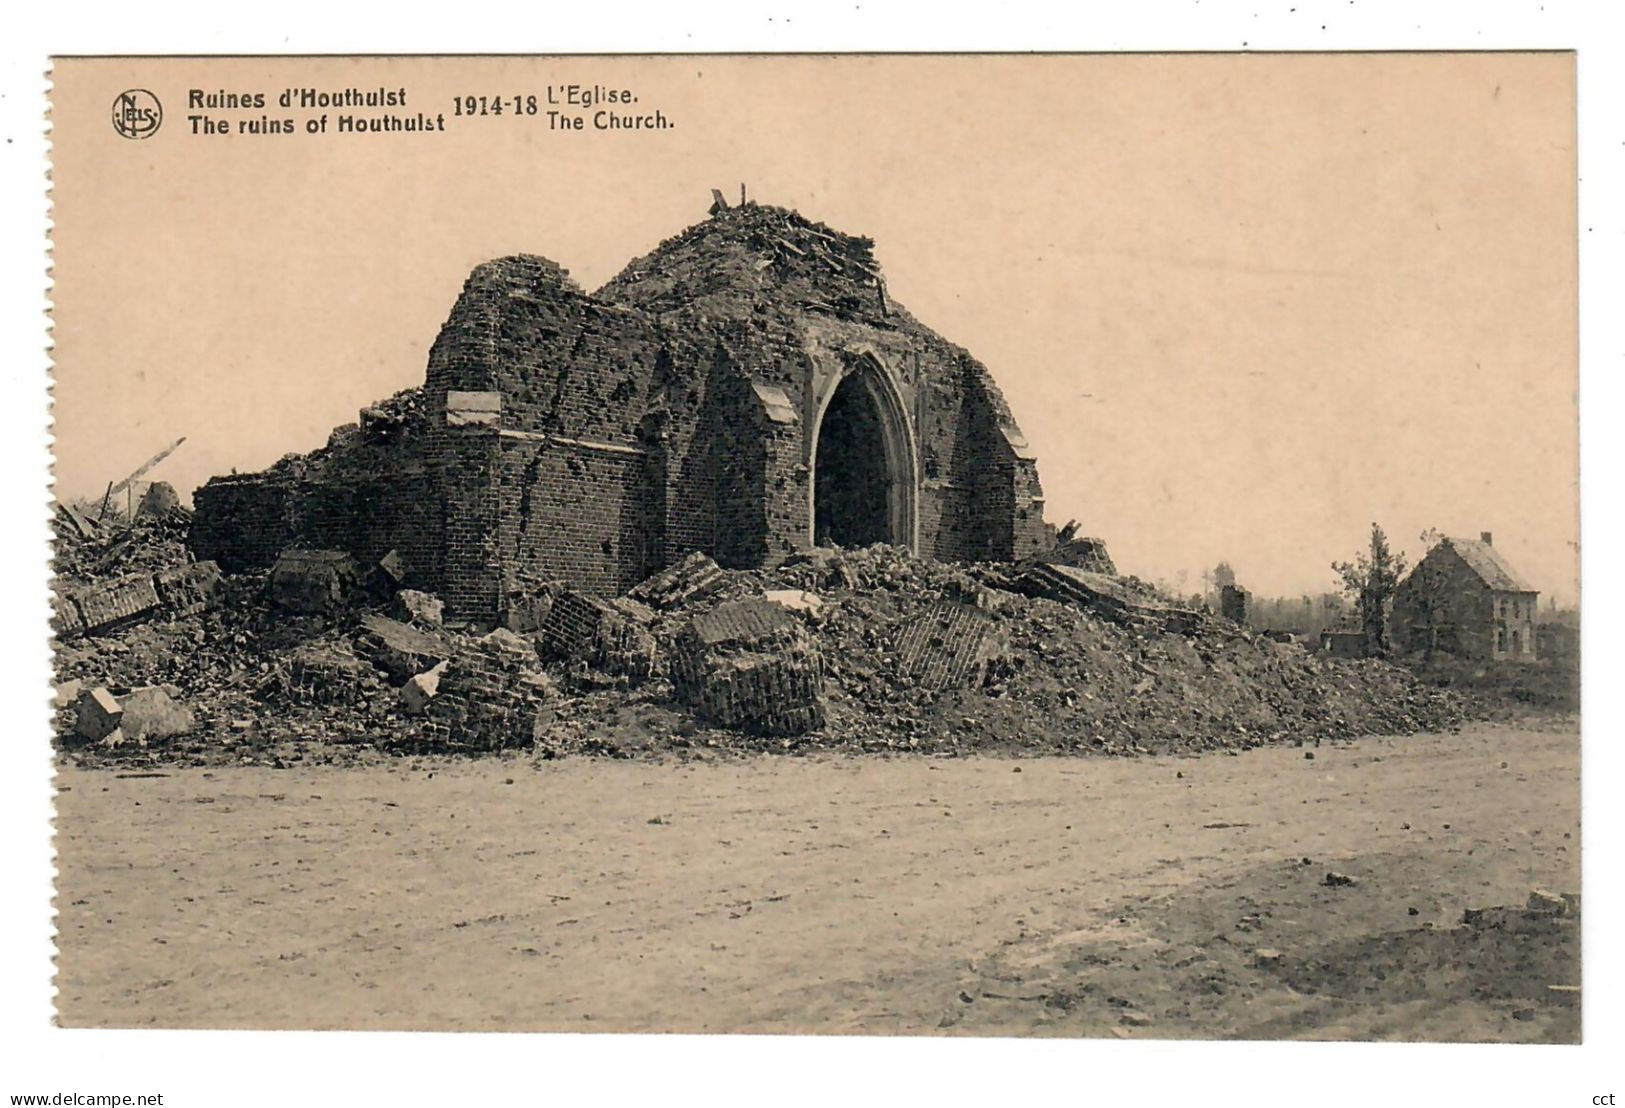 Houthulst   9 postkaarten Ruines de la Forêt d'Houthulst 1914-1918